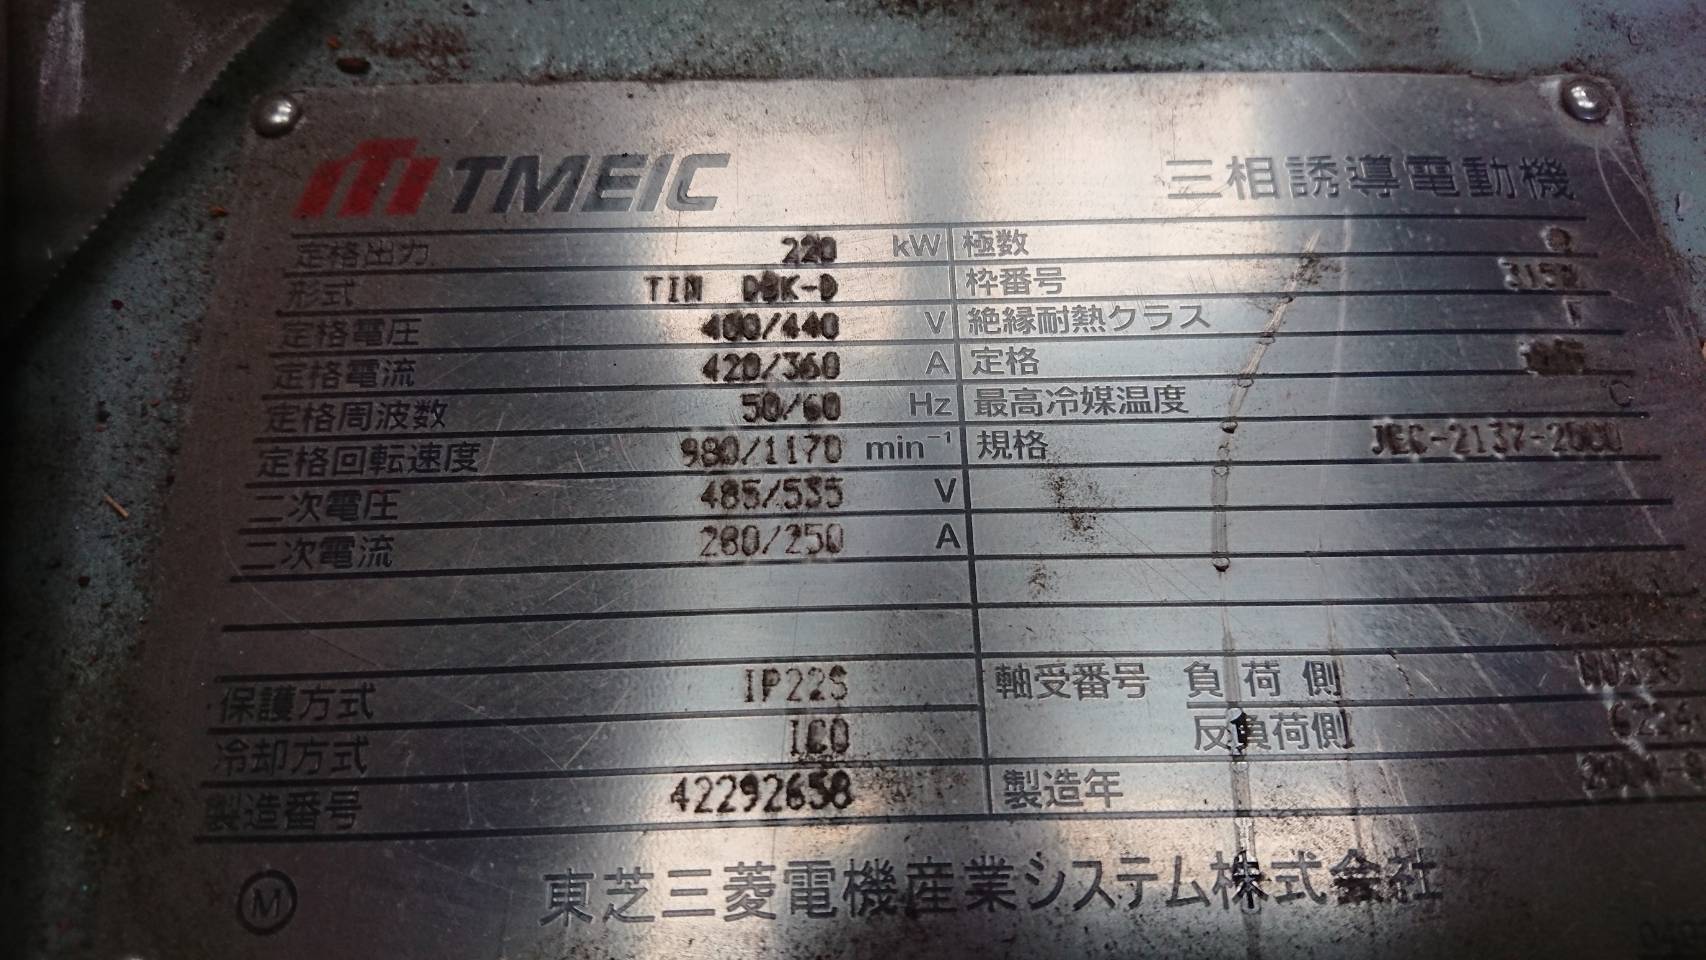 【No.17-18】220kw6P400V  東芝三菱　巻き線型モーター